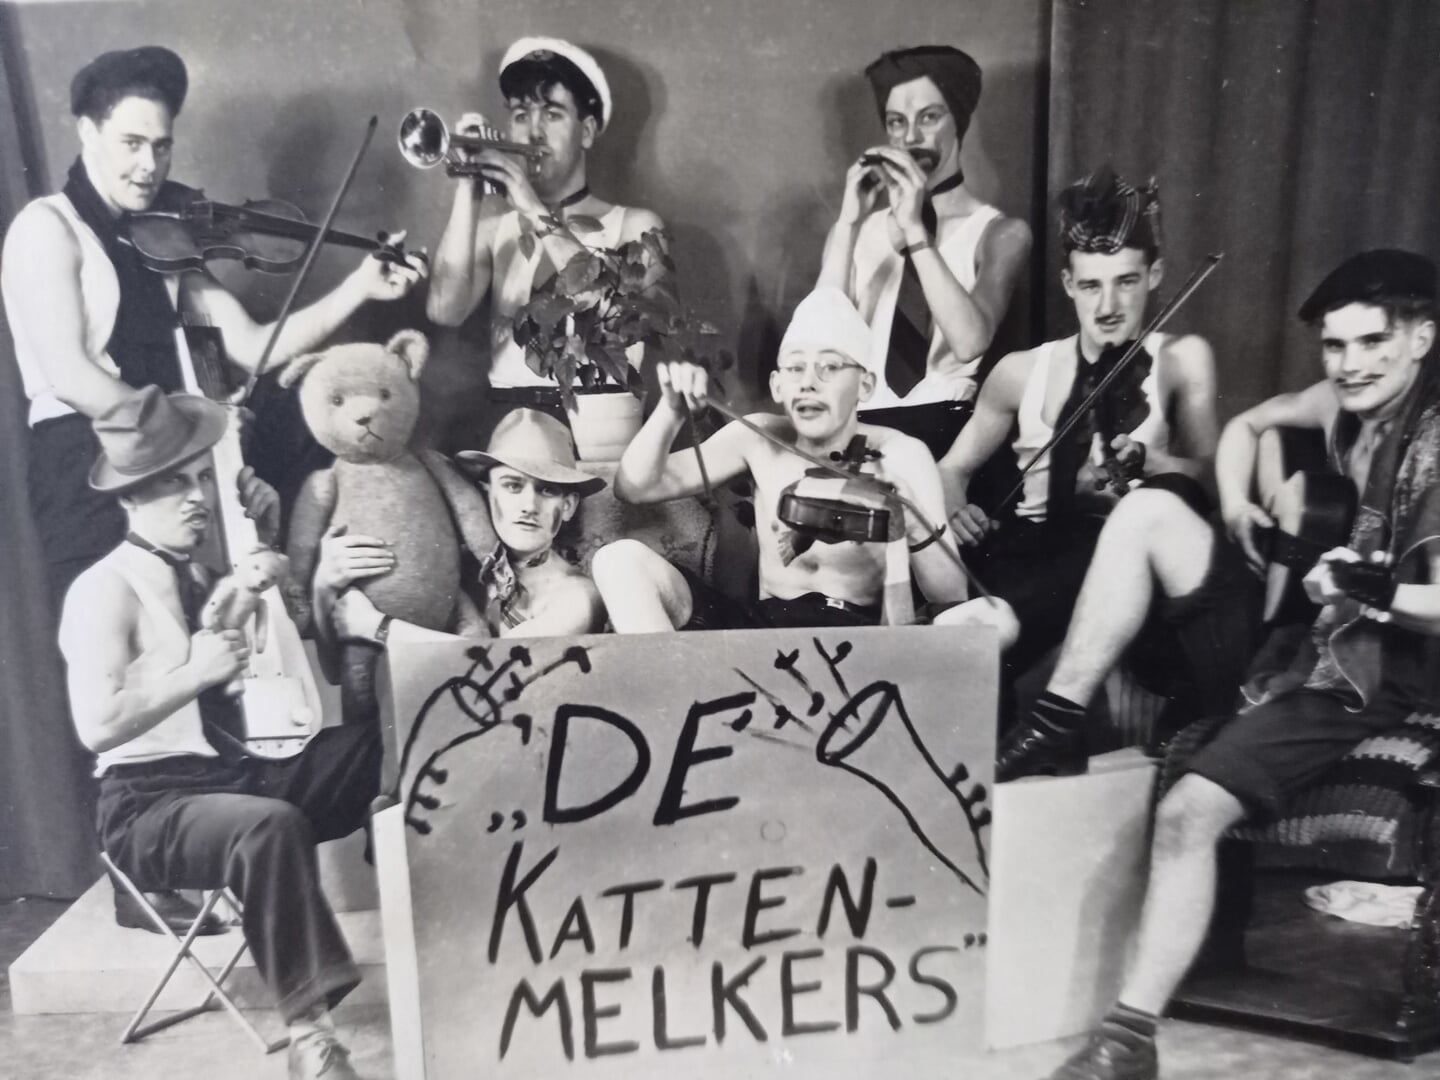 Vrienden uit het centrum in een jolige pose als de muziekgroep 'De kattenmelkers'. Jan Bakker 'bespeelt' rechtsboven de trompet. Op de foto onder meer Hein van Schuppen, Gert Dijkstra (van de bakker), Wim Radding, Van Ojik en Weijers (wit petje) uit Scherpenzeel. Omstreeks 1945.